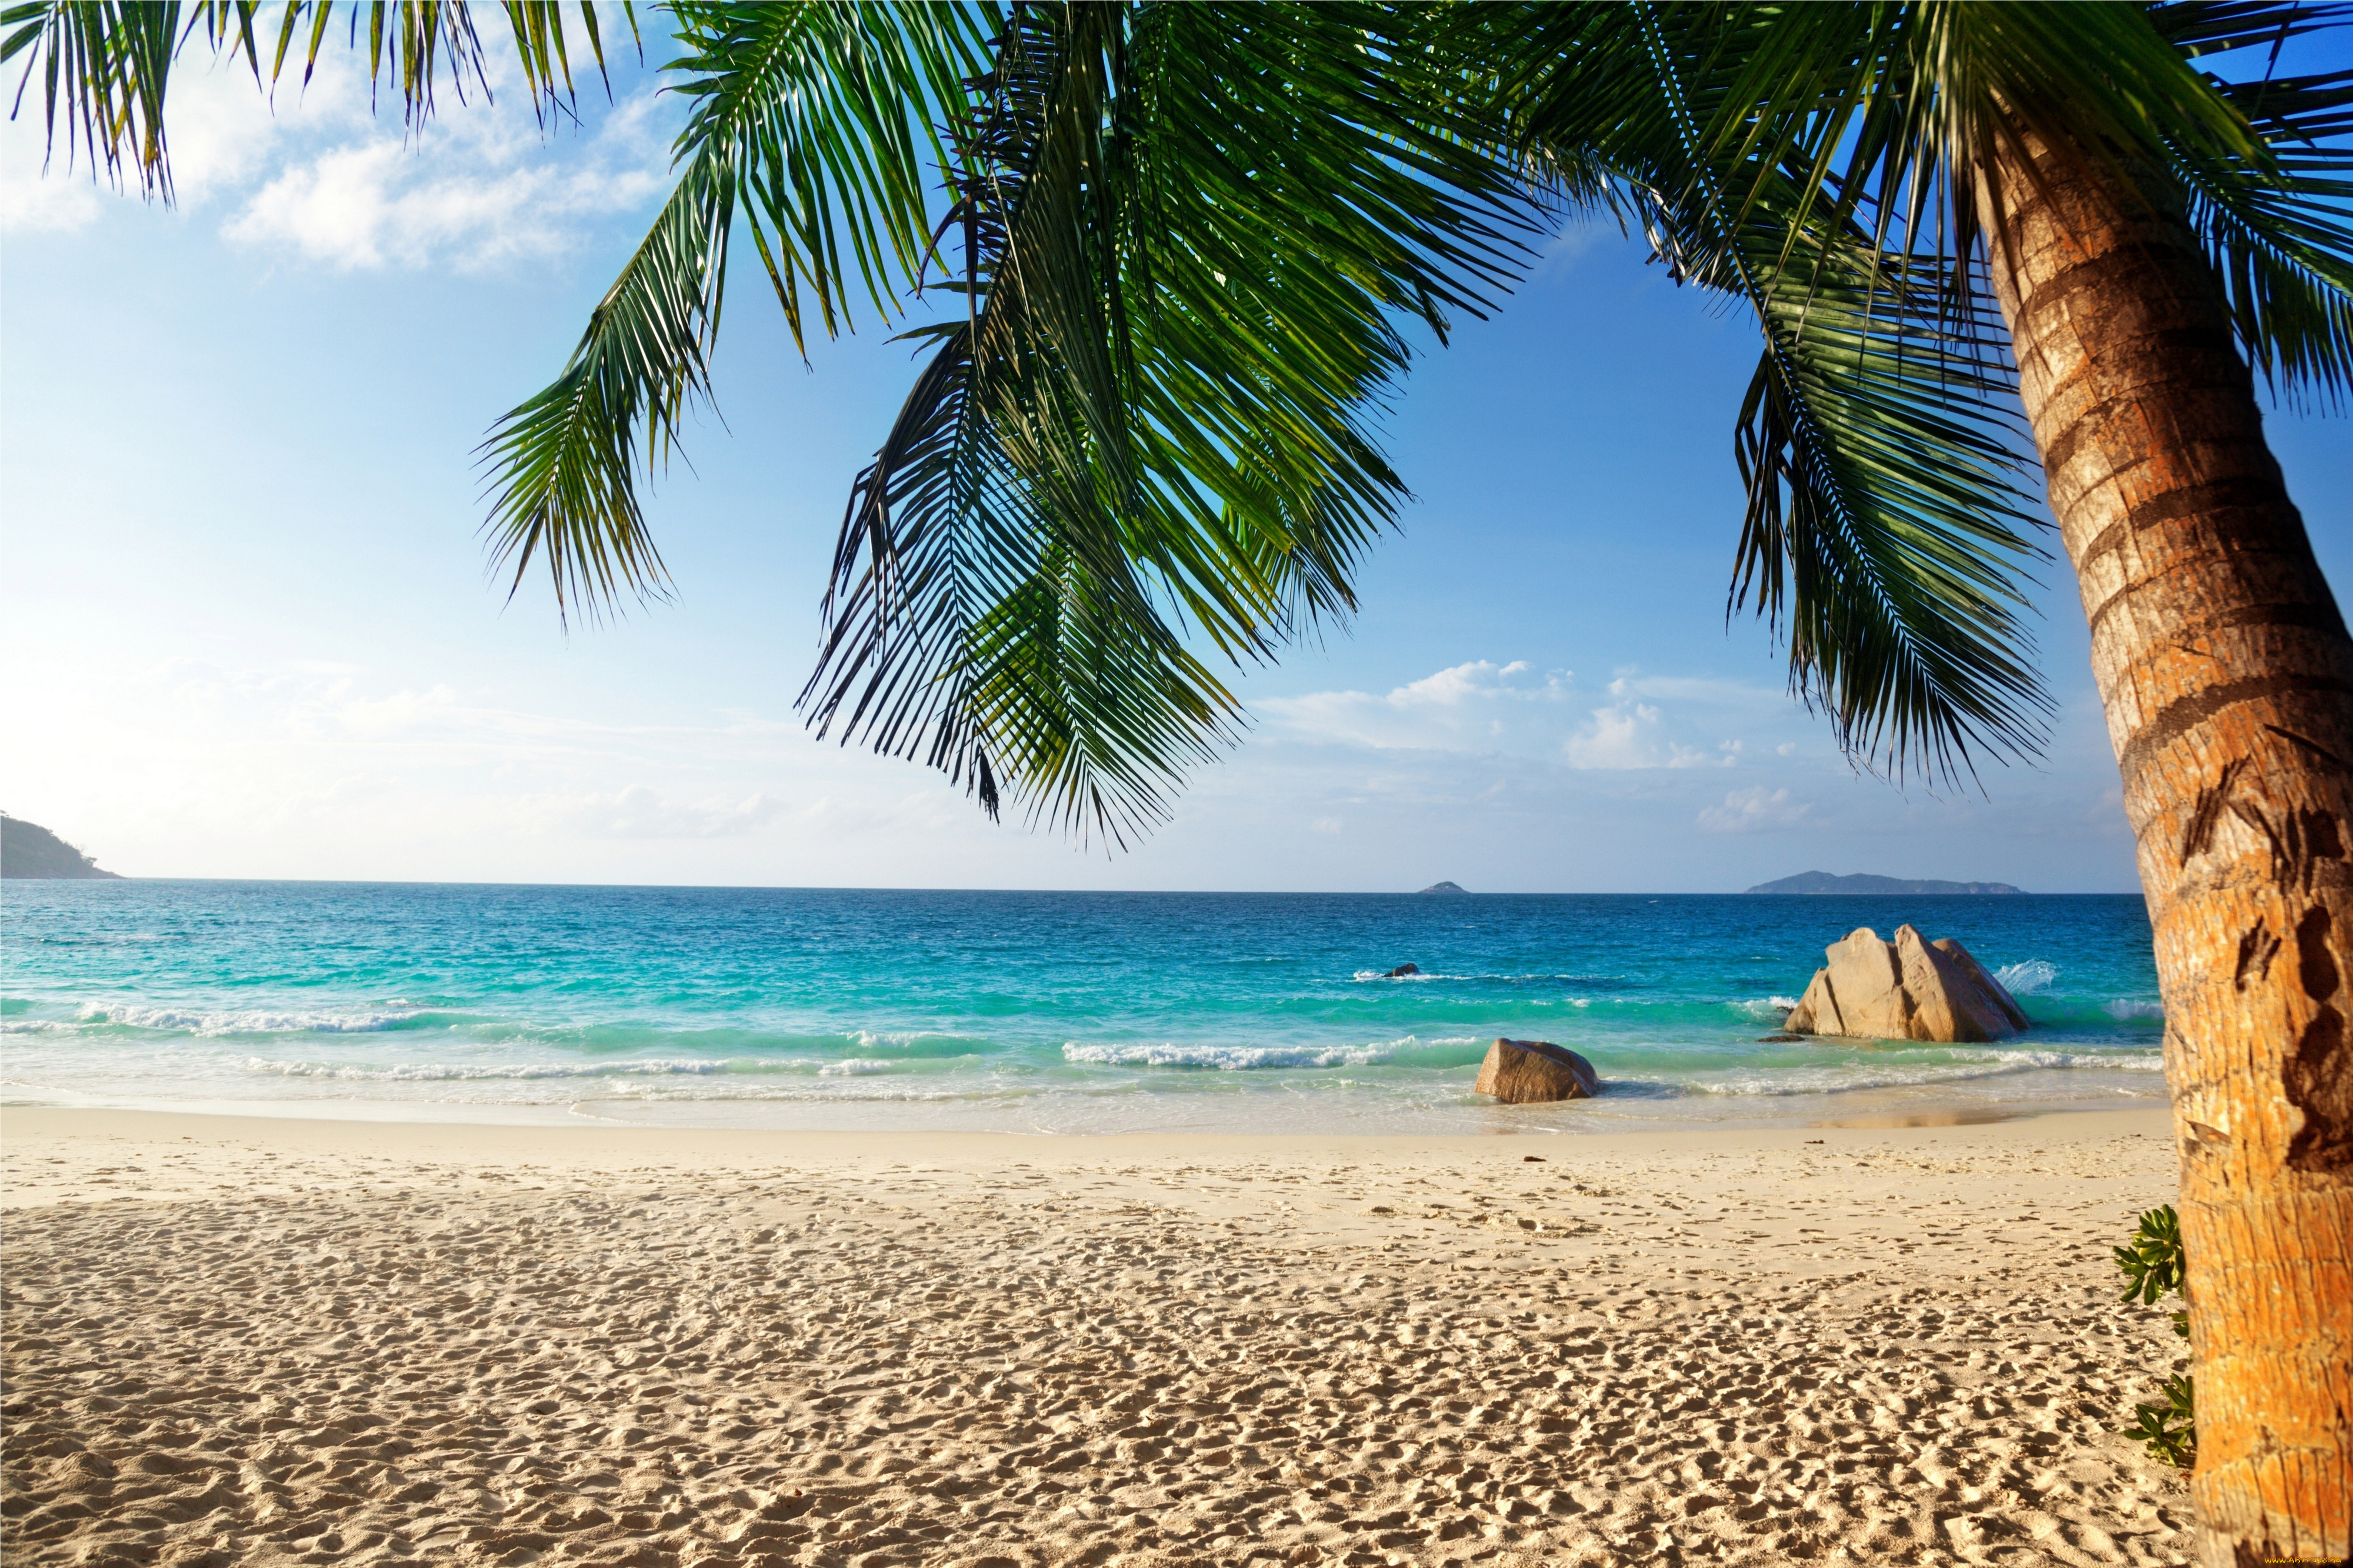 природа, тропики, tropical, paradise, beach, palms, sea, ocean, summer, vacation, пляж, море, пальмы, песок, берег